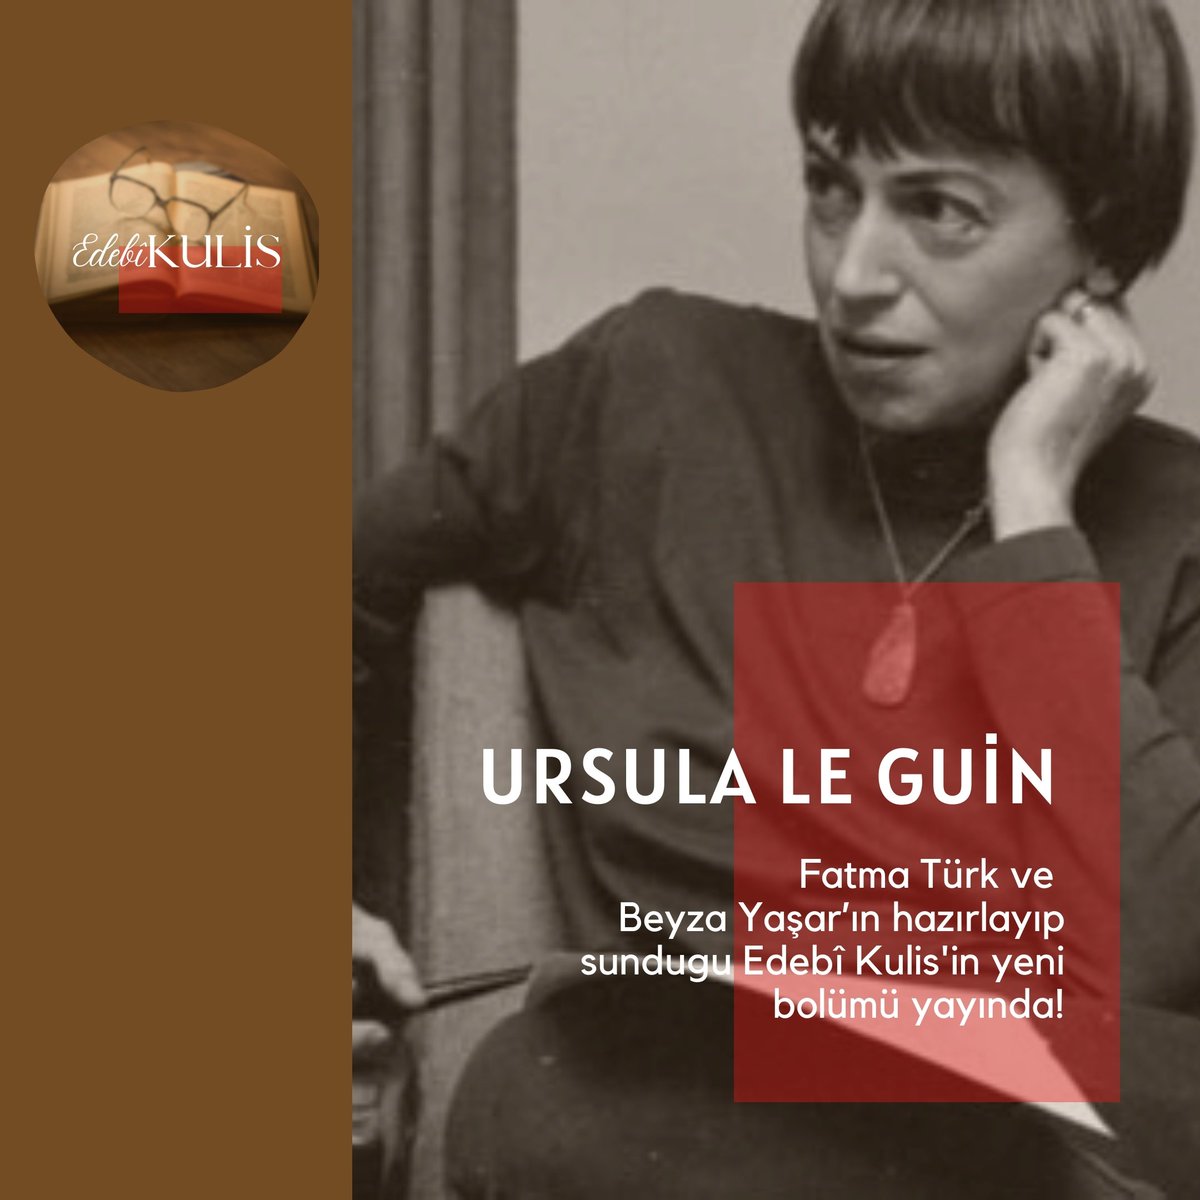 youtu.be/zkSpK7P2xWQ?si…
Edebi Kulis 10. Bölümünde Ursula Le Guin'i ağırlıyor.

#ursulaleguin